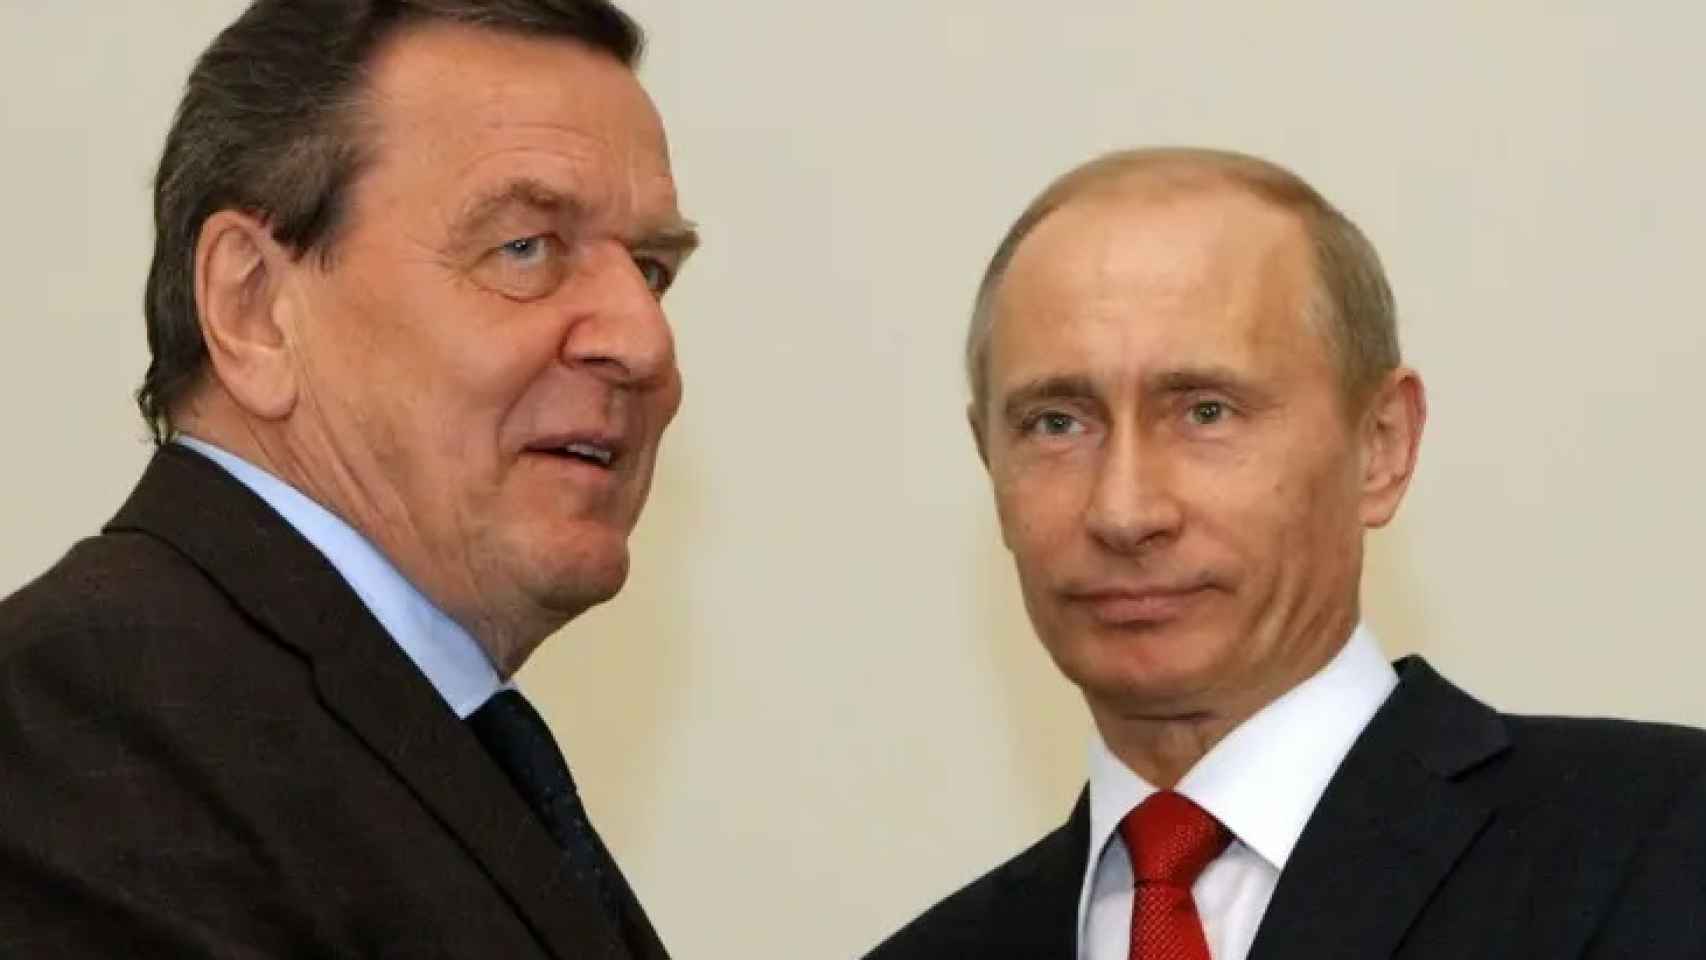 Gerhard Schröder y Vladímir Putin en una imagen de archivo. Efe